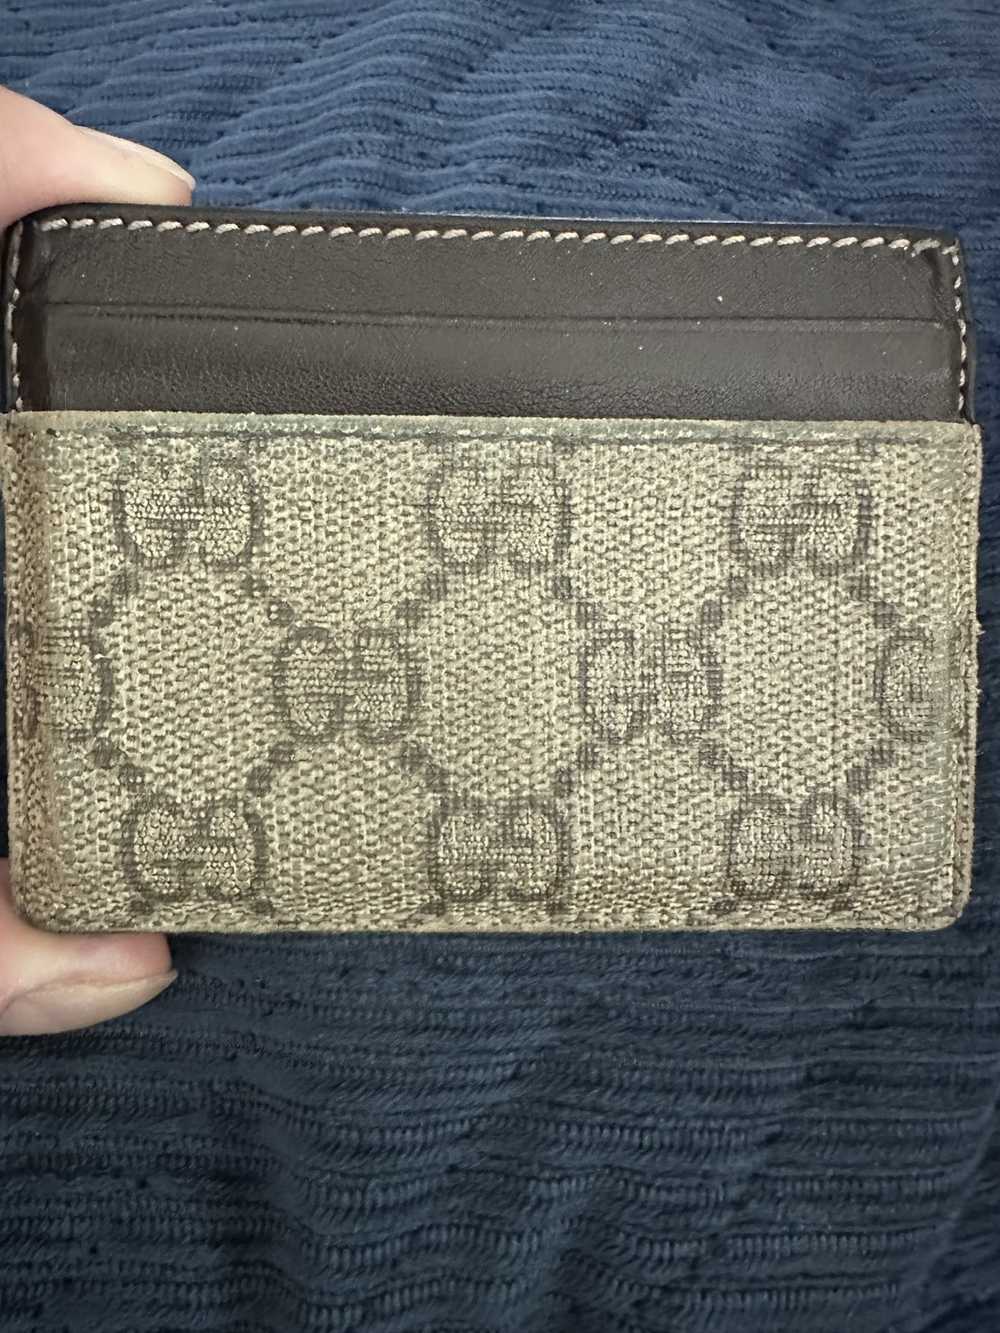 Gucci Gucci monogram GG card case - image 3